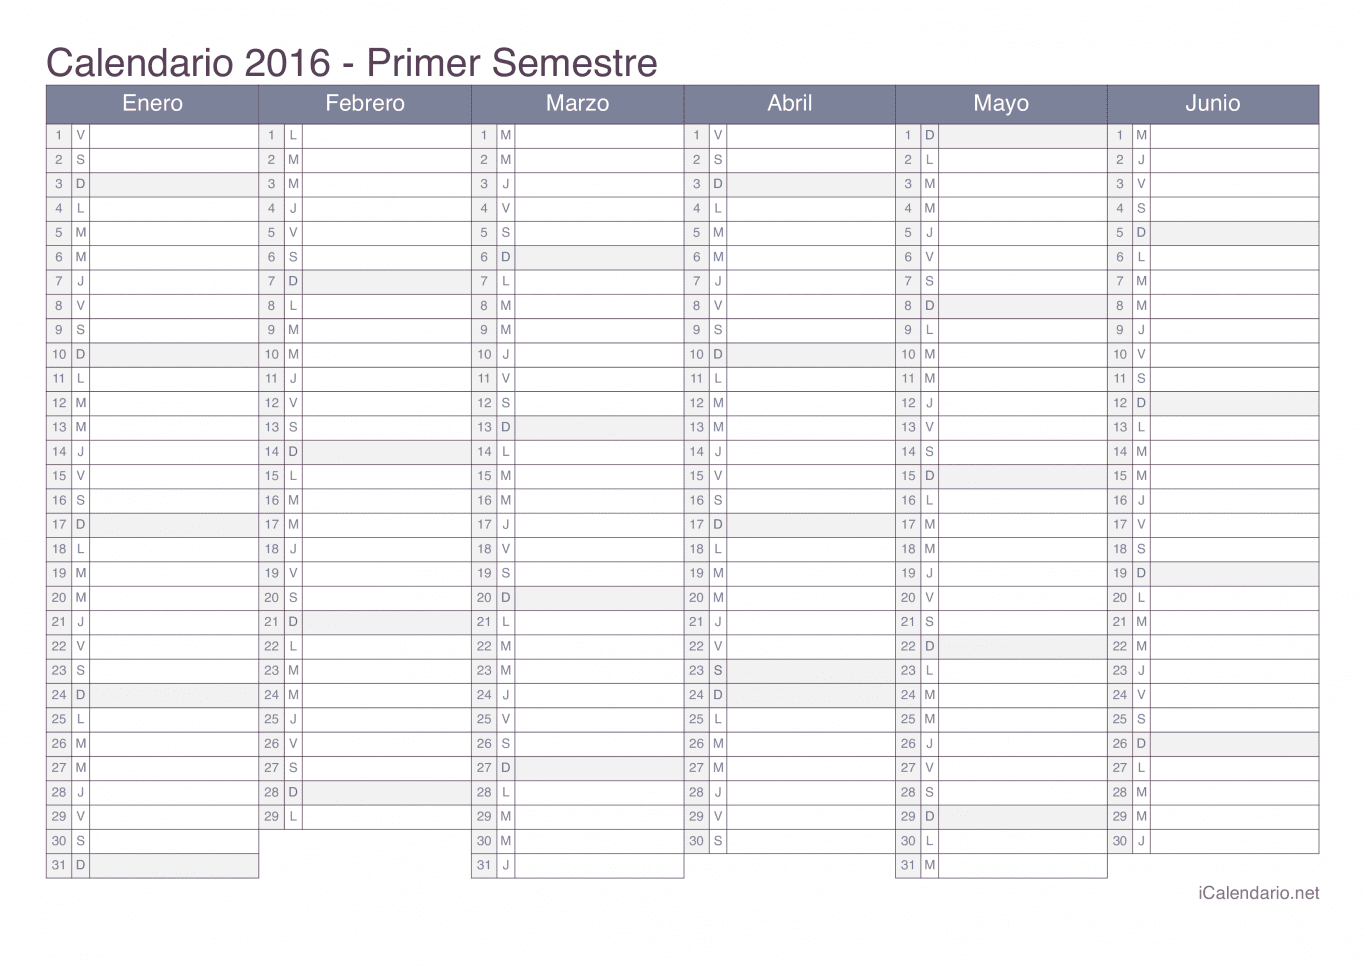 Calendario por semestre 2016 - Office